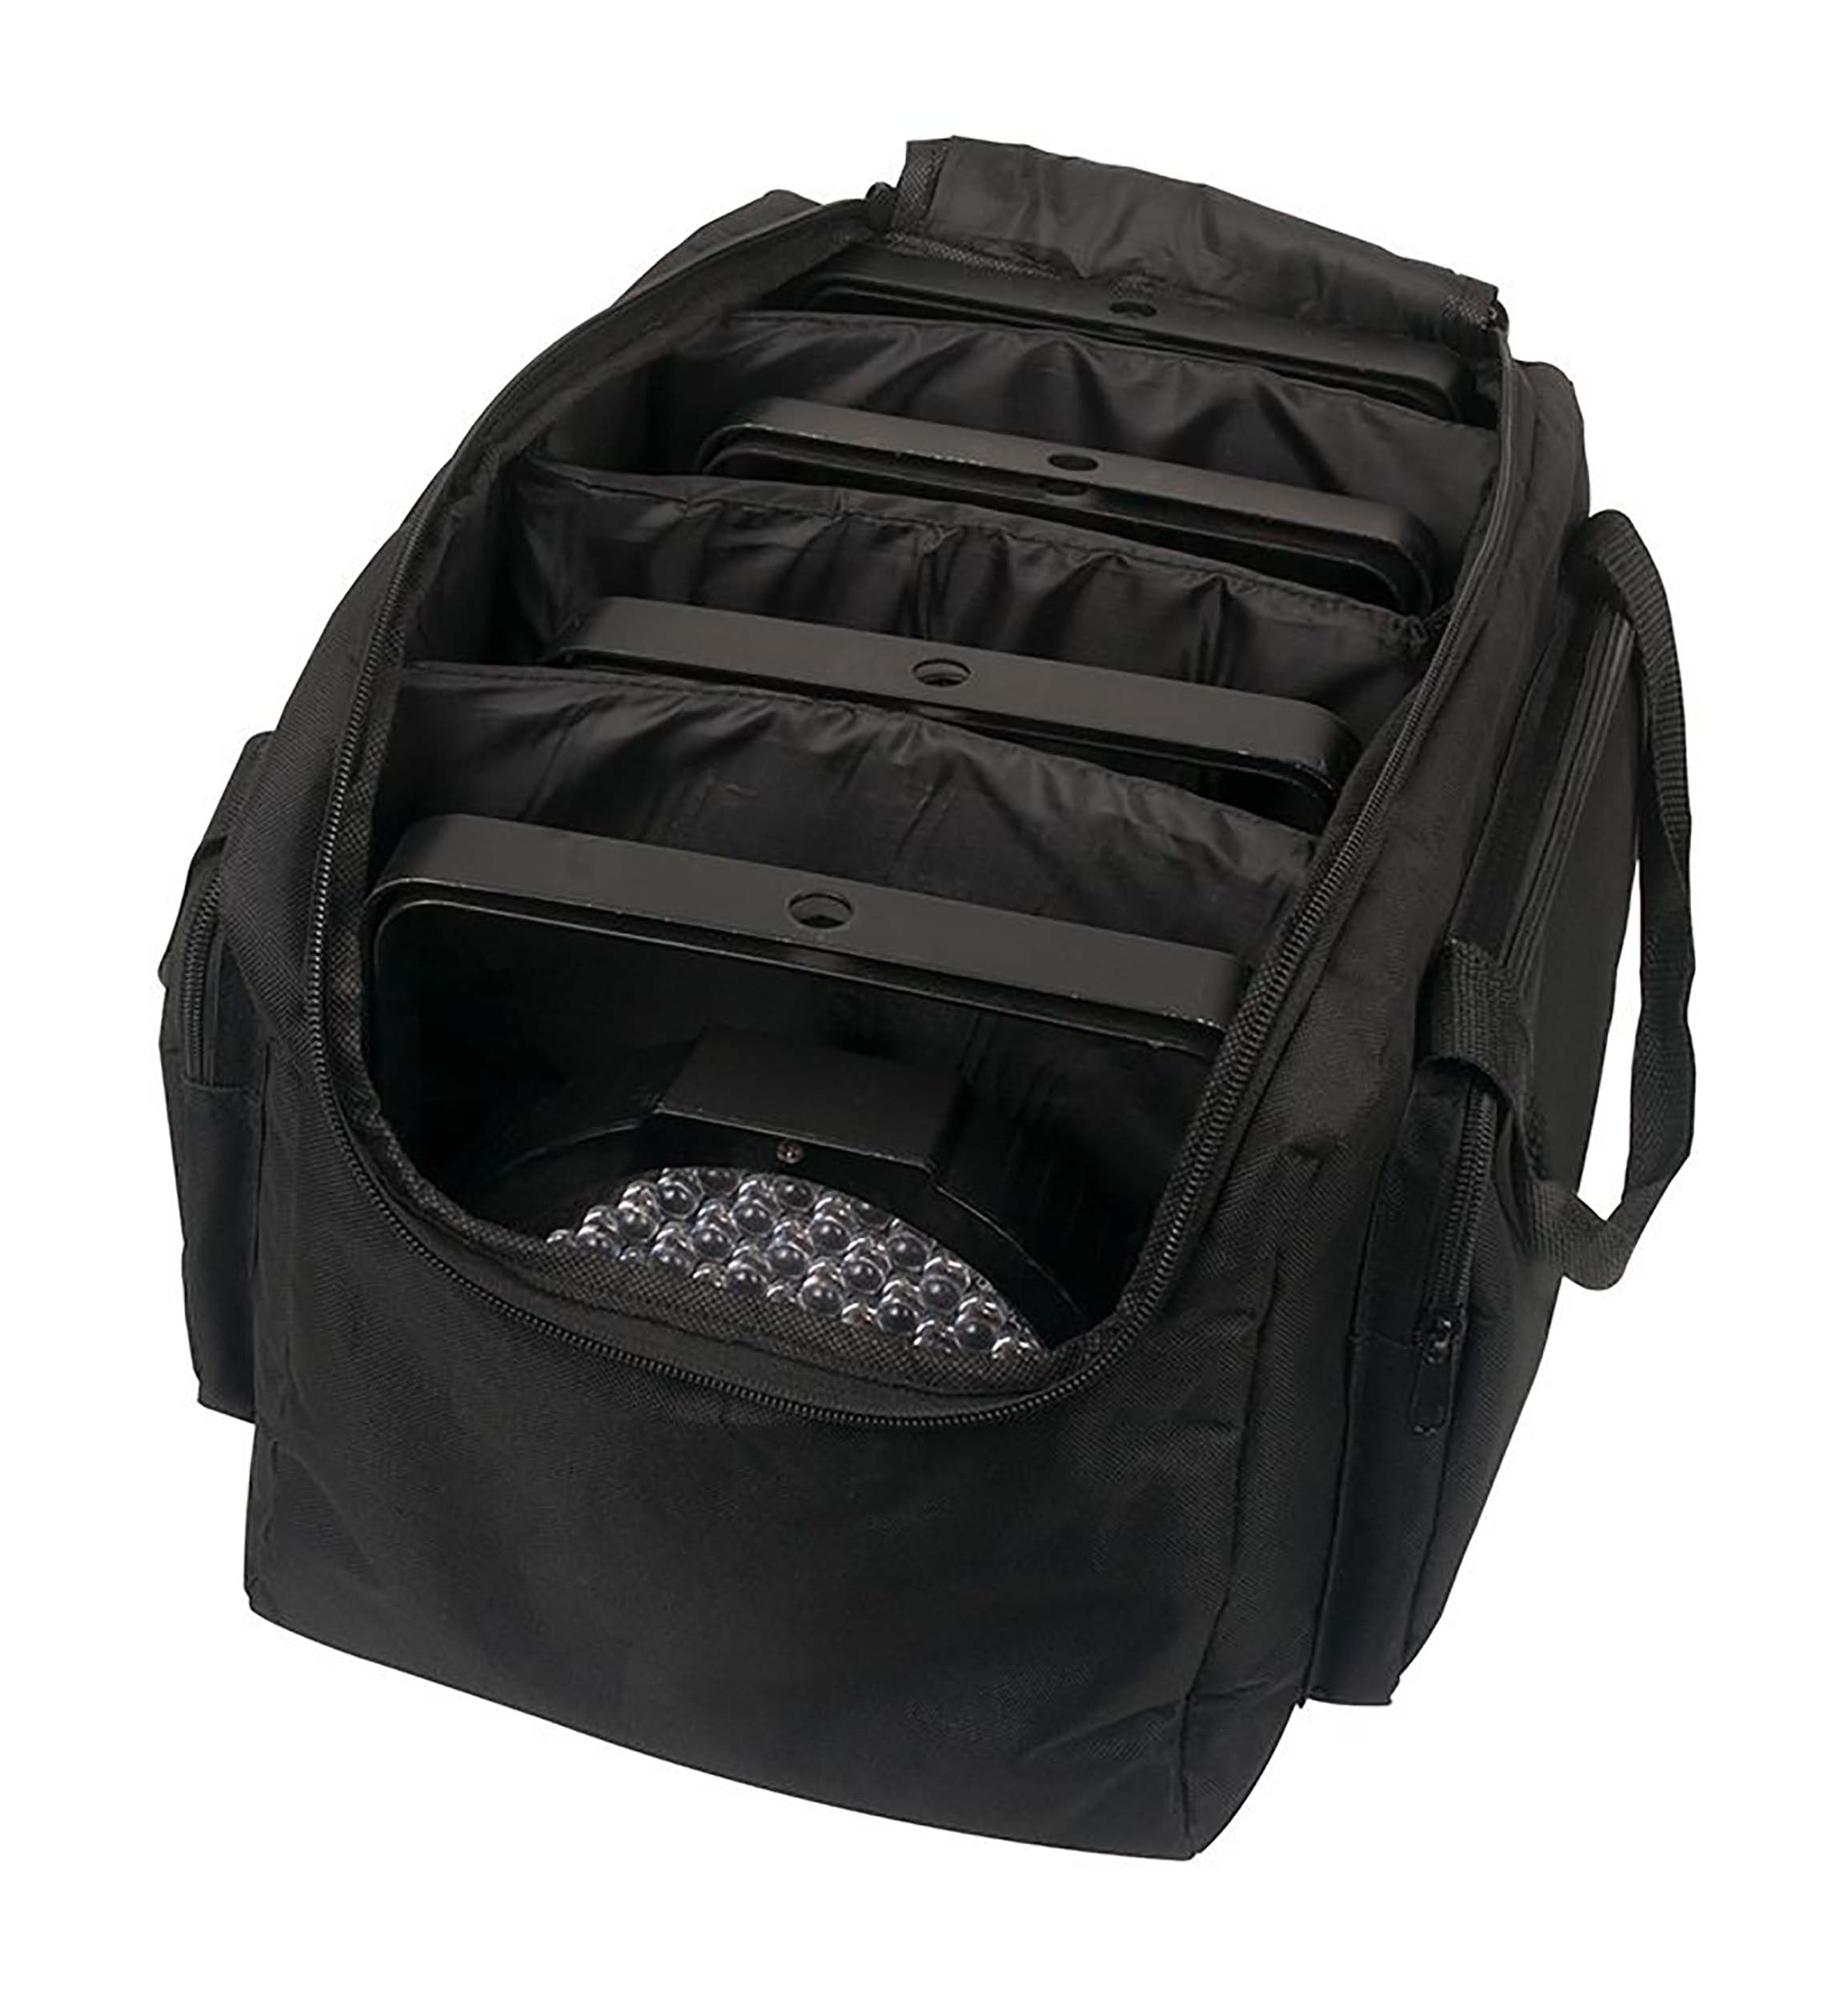 Eliminator Lighting F4 Par Bag EP, Soft Padded Transport Bag Designed for Modern Flat Par Fixtures by Eliminator Lighting